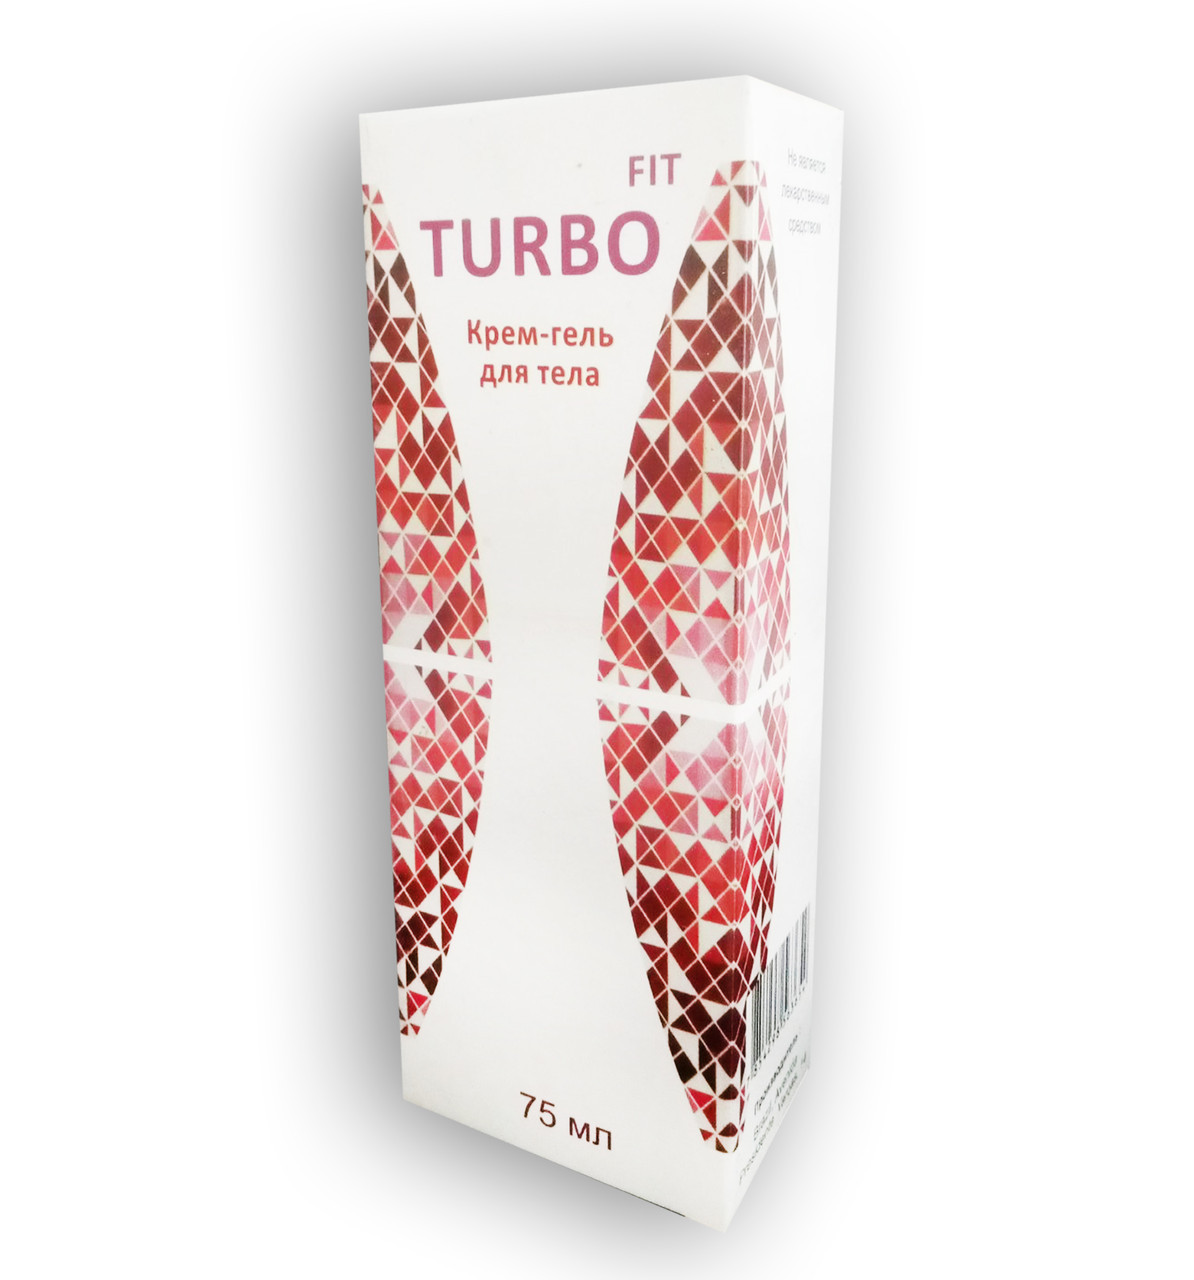 Тurbo Fit - Крем-гель жиросжигающие для тіла (ТурбоФит)